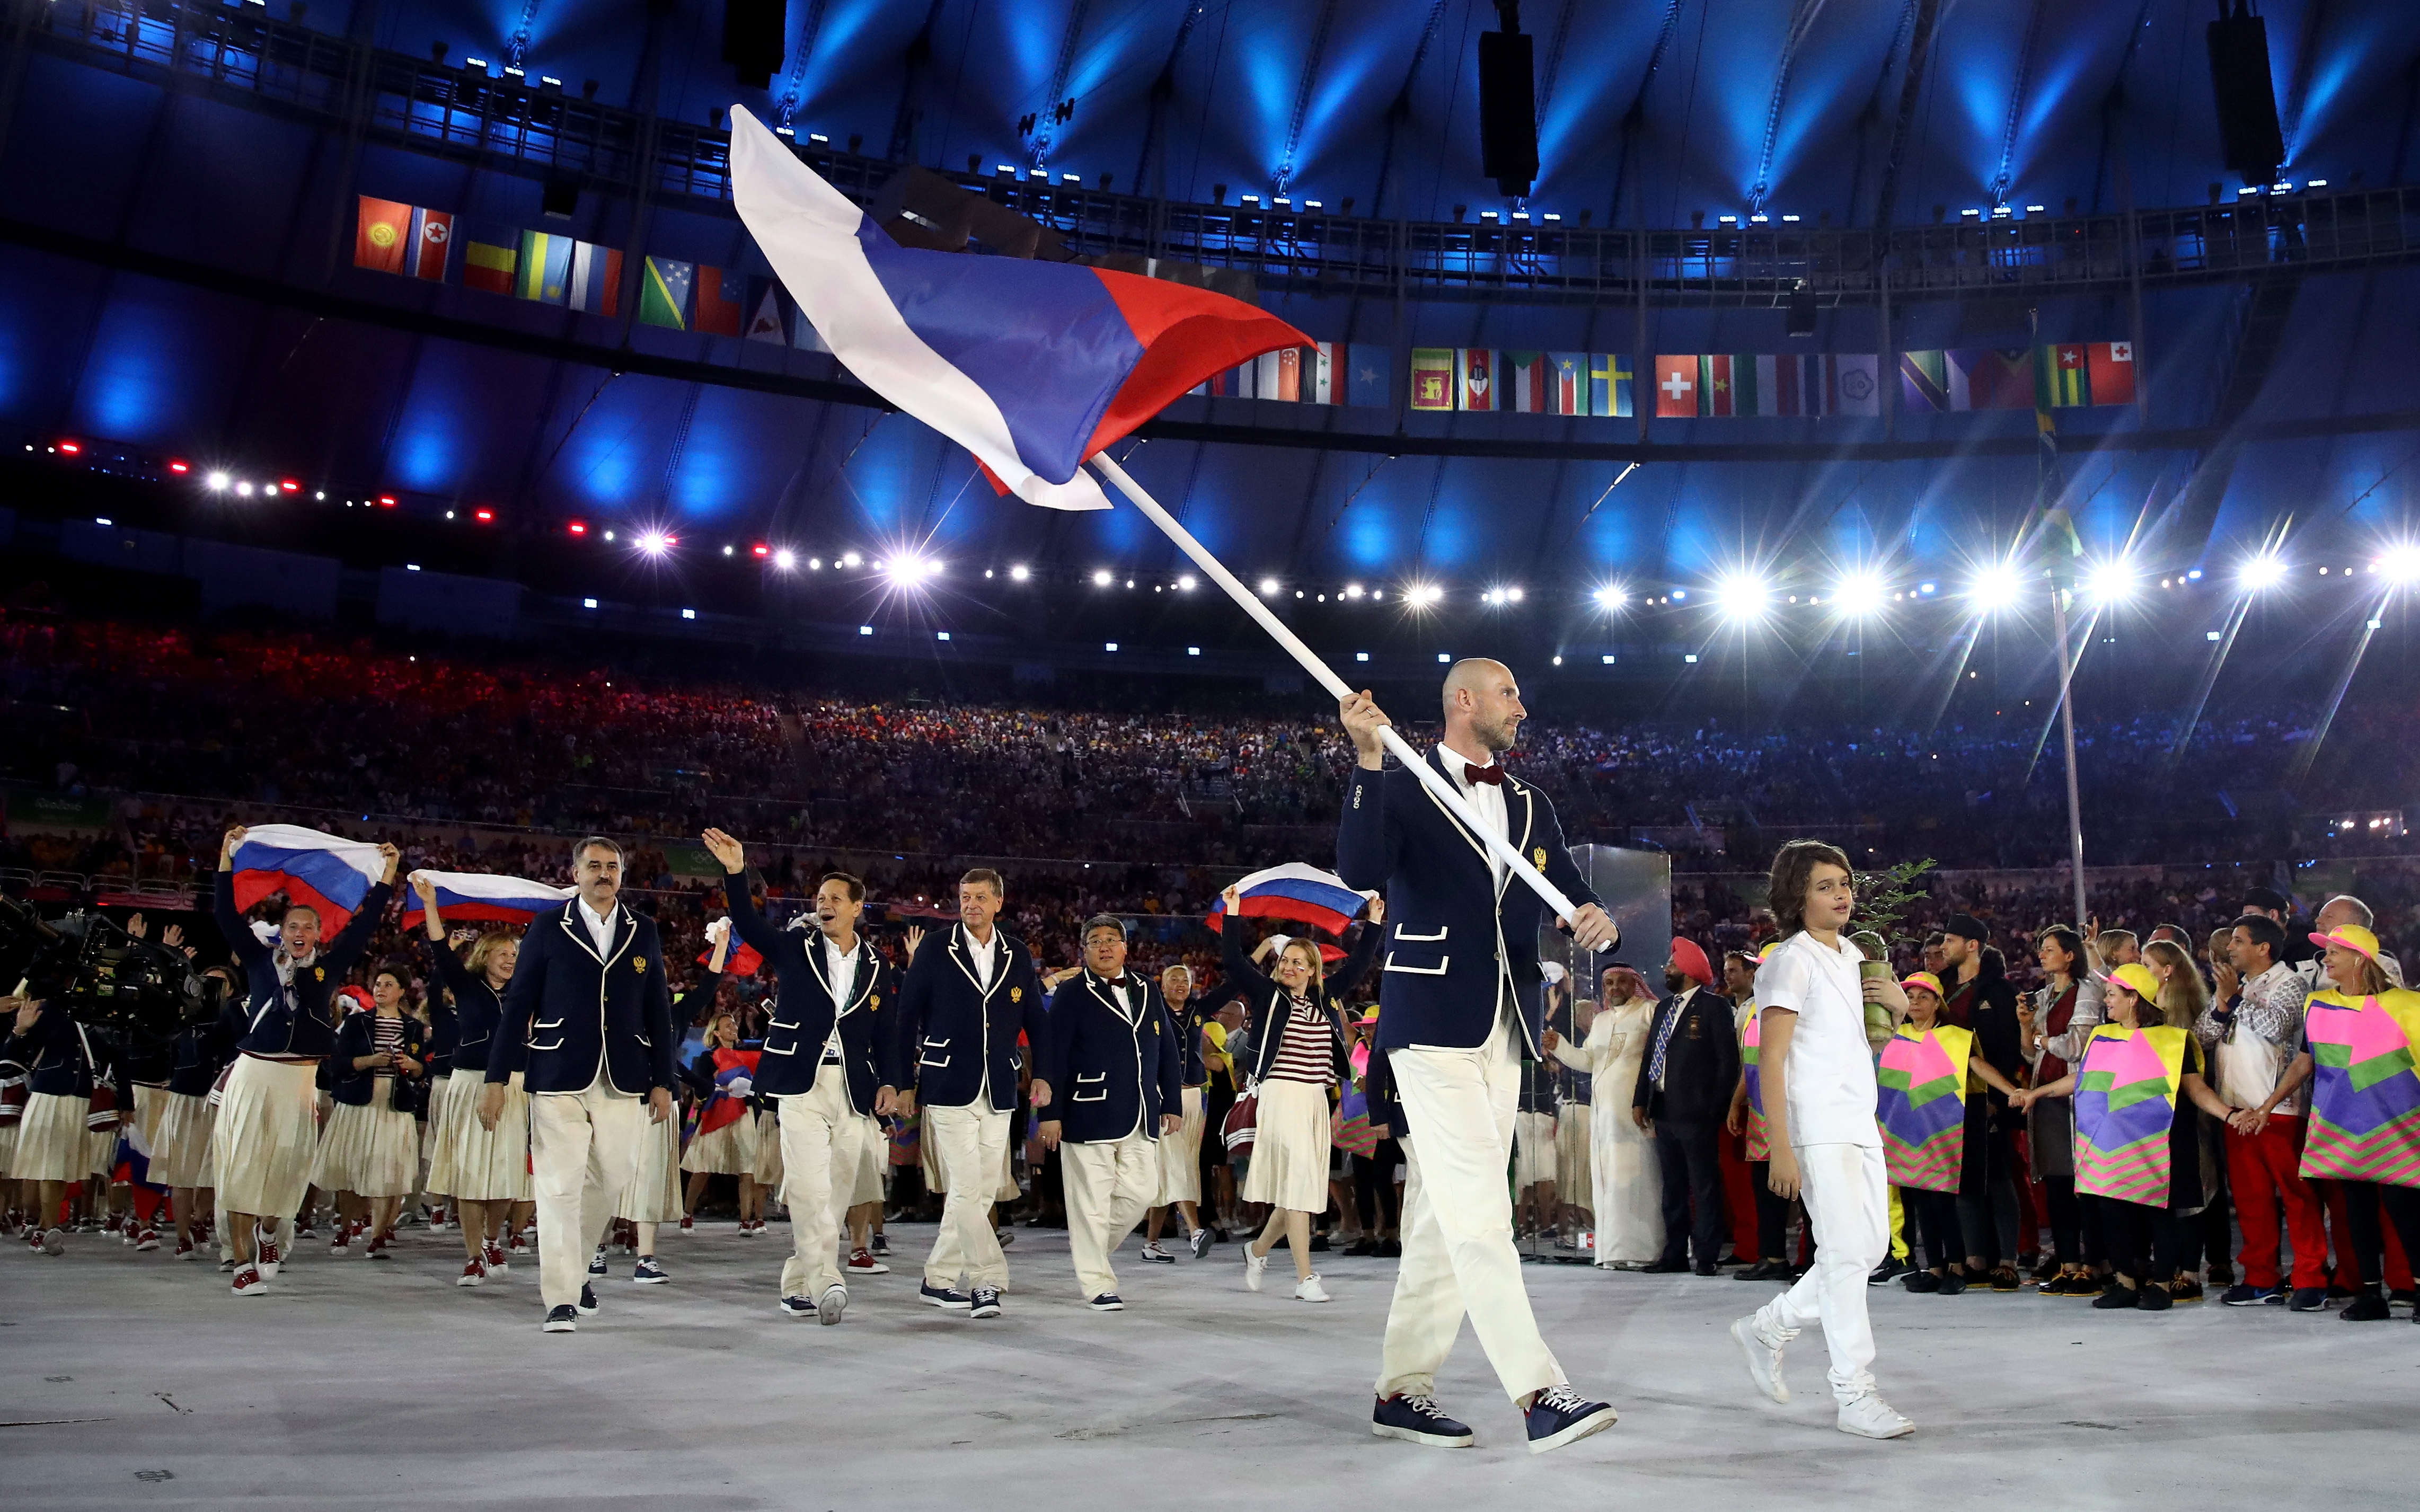 谢尔盖·特秋欣 (Sergei Tetiukhin) 在 2016 年里约奥运会开幕式上带领他的球队进入体育场时，他举着一面巨大的俄罗斯国旗。